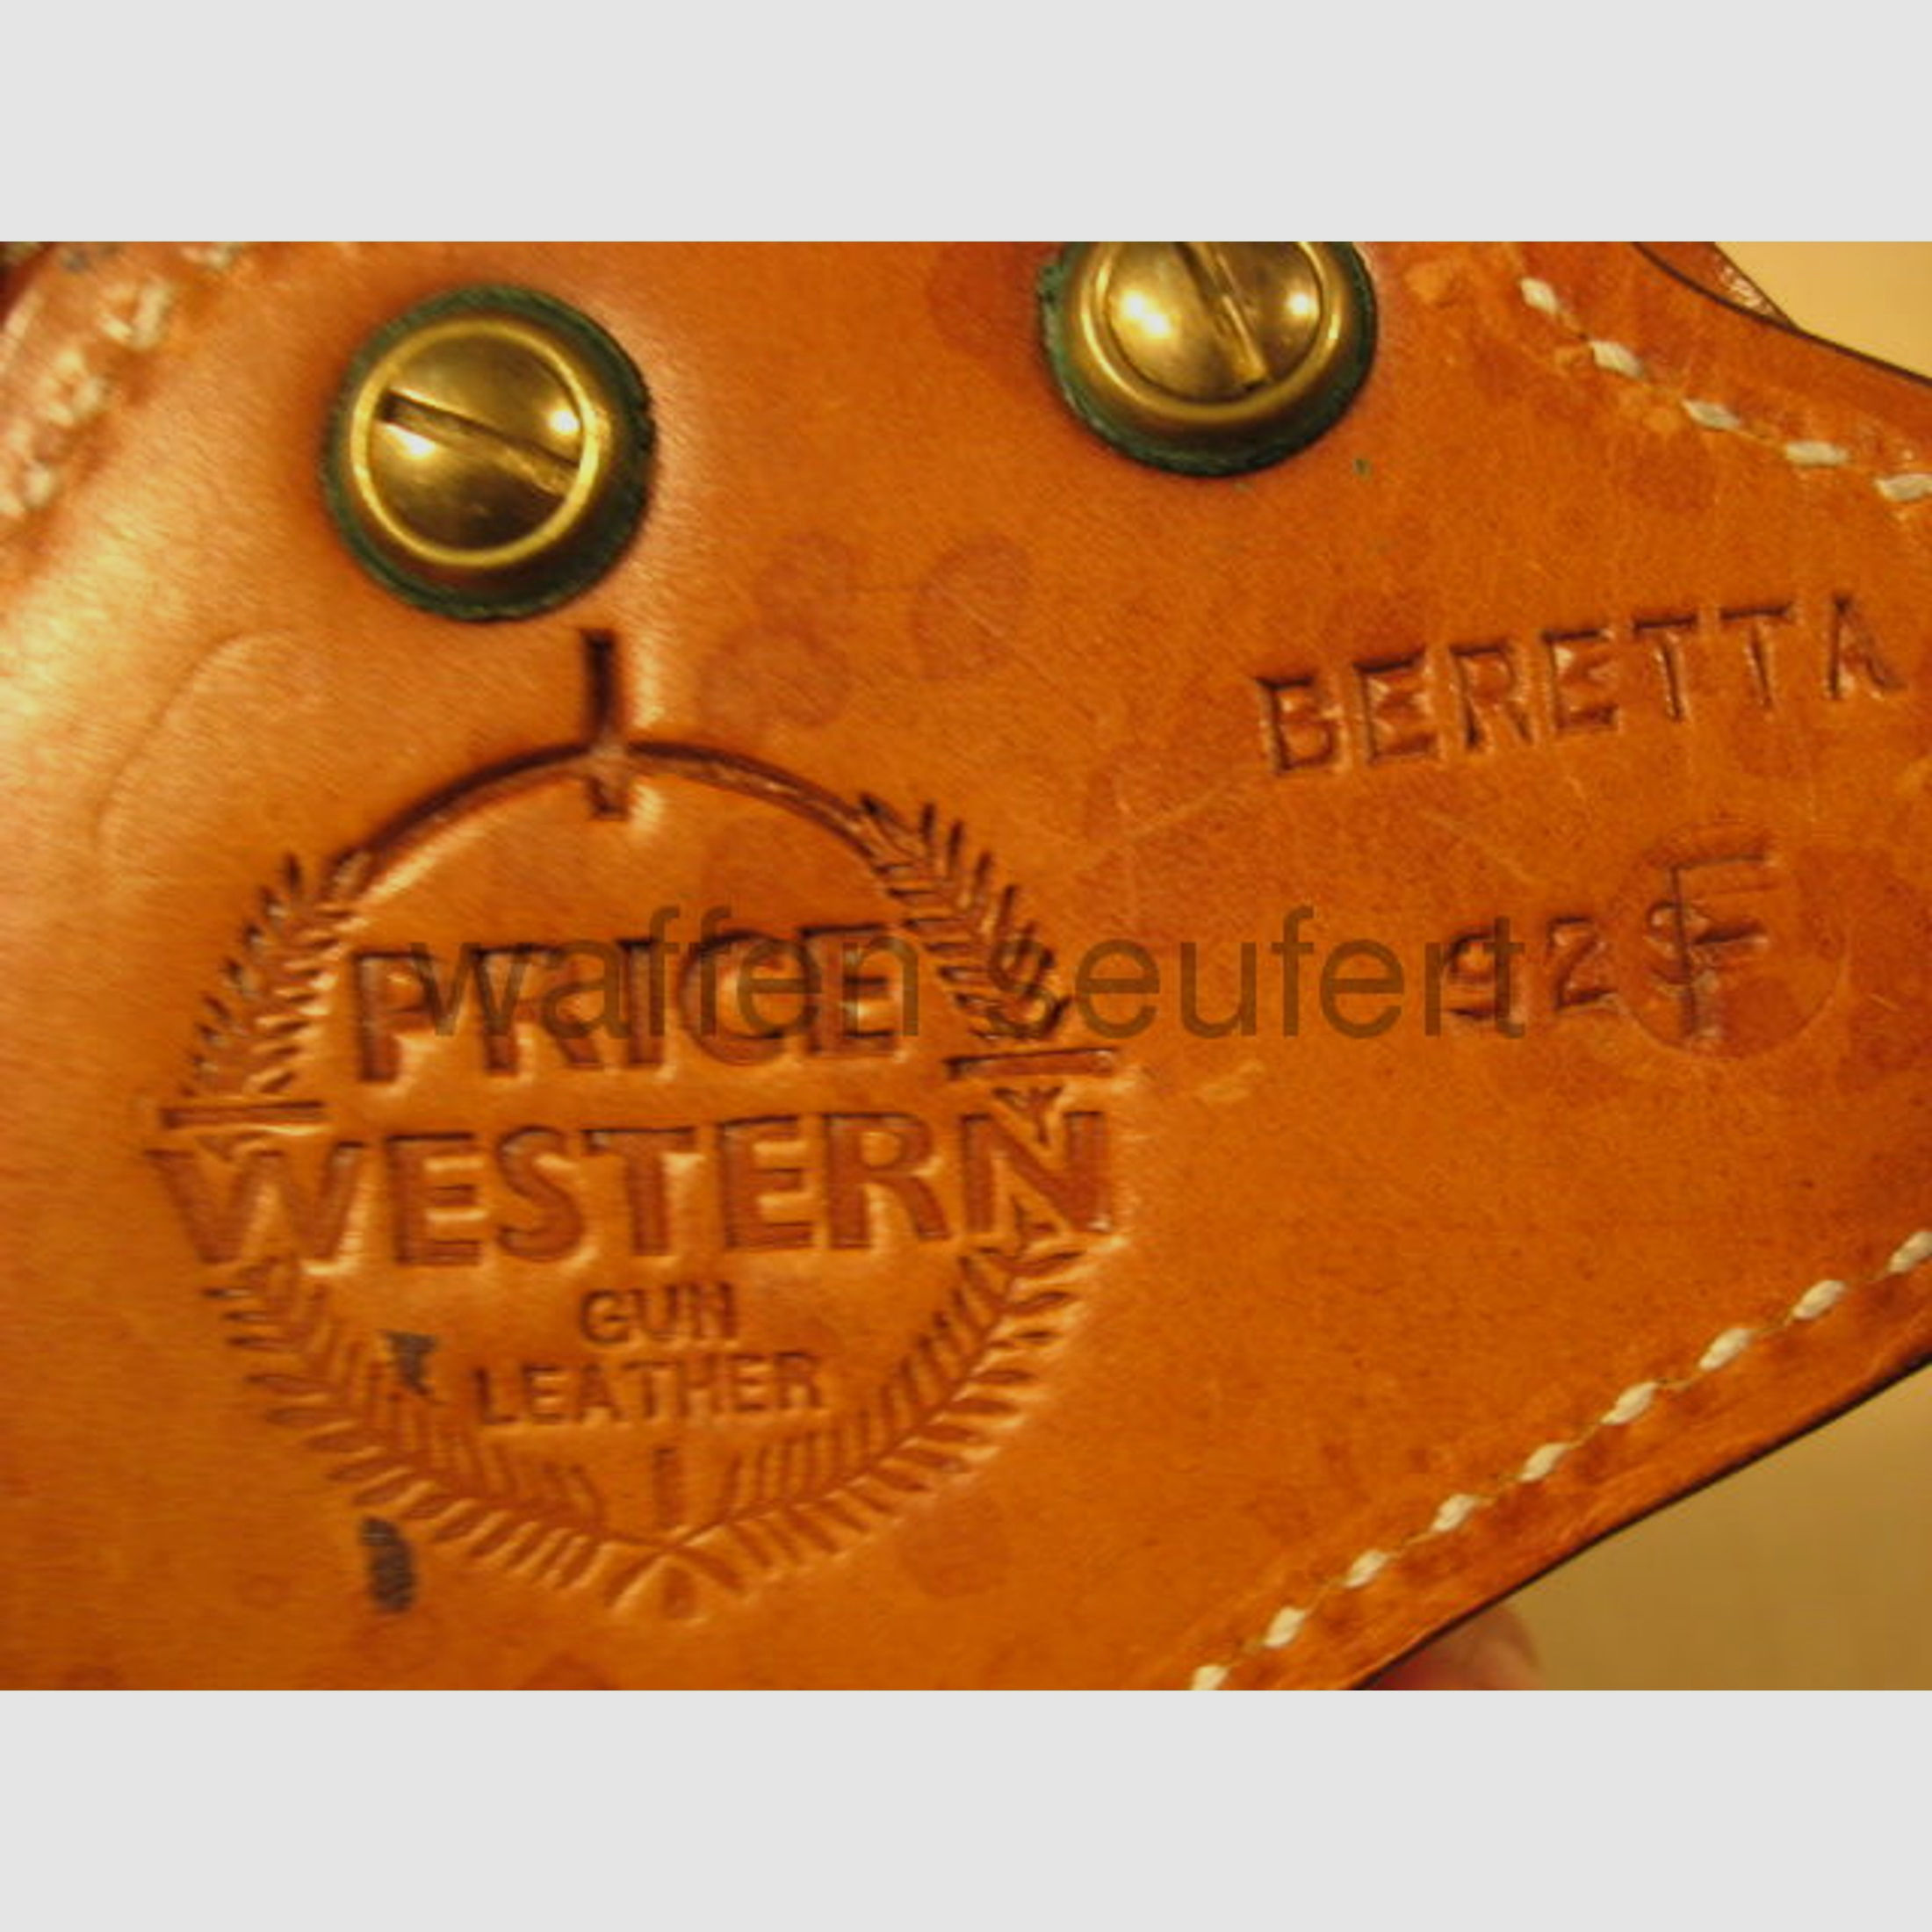 Price Western Gürtelholster für Beretta 92F